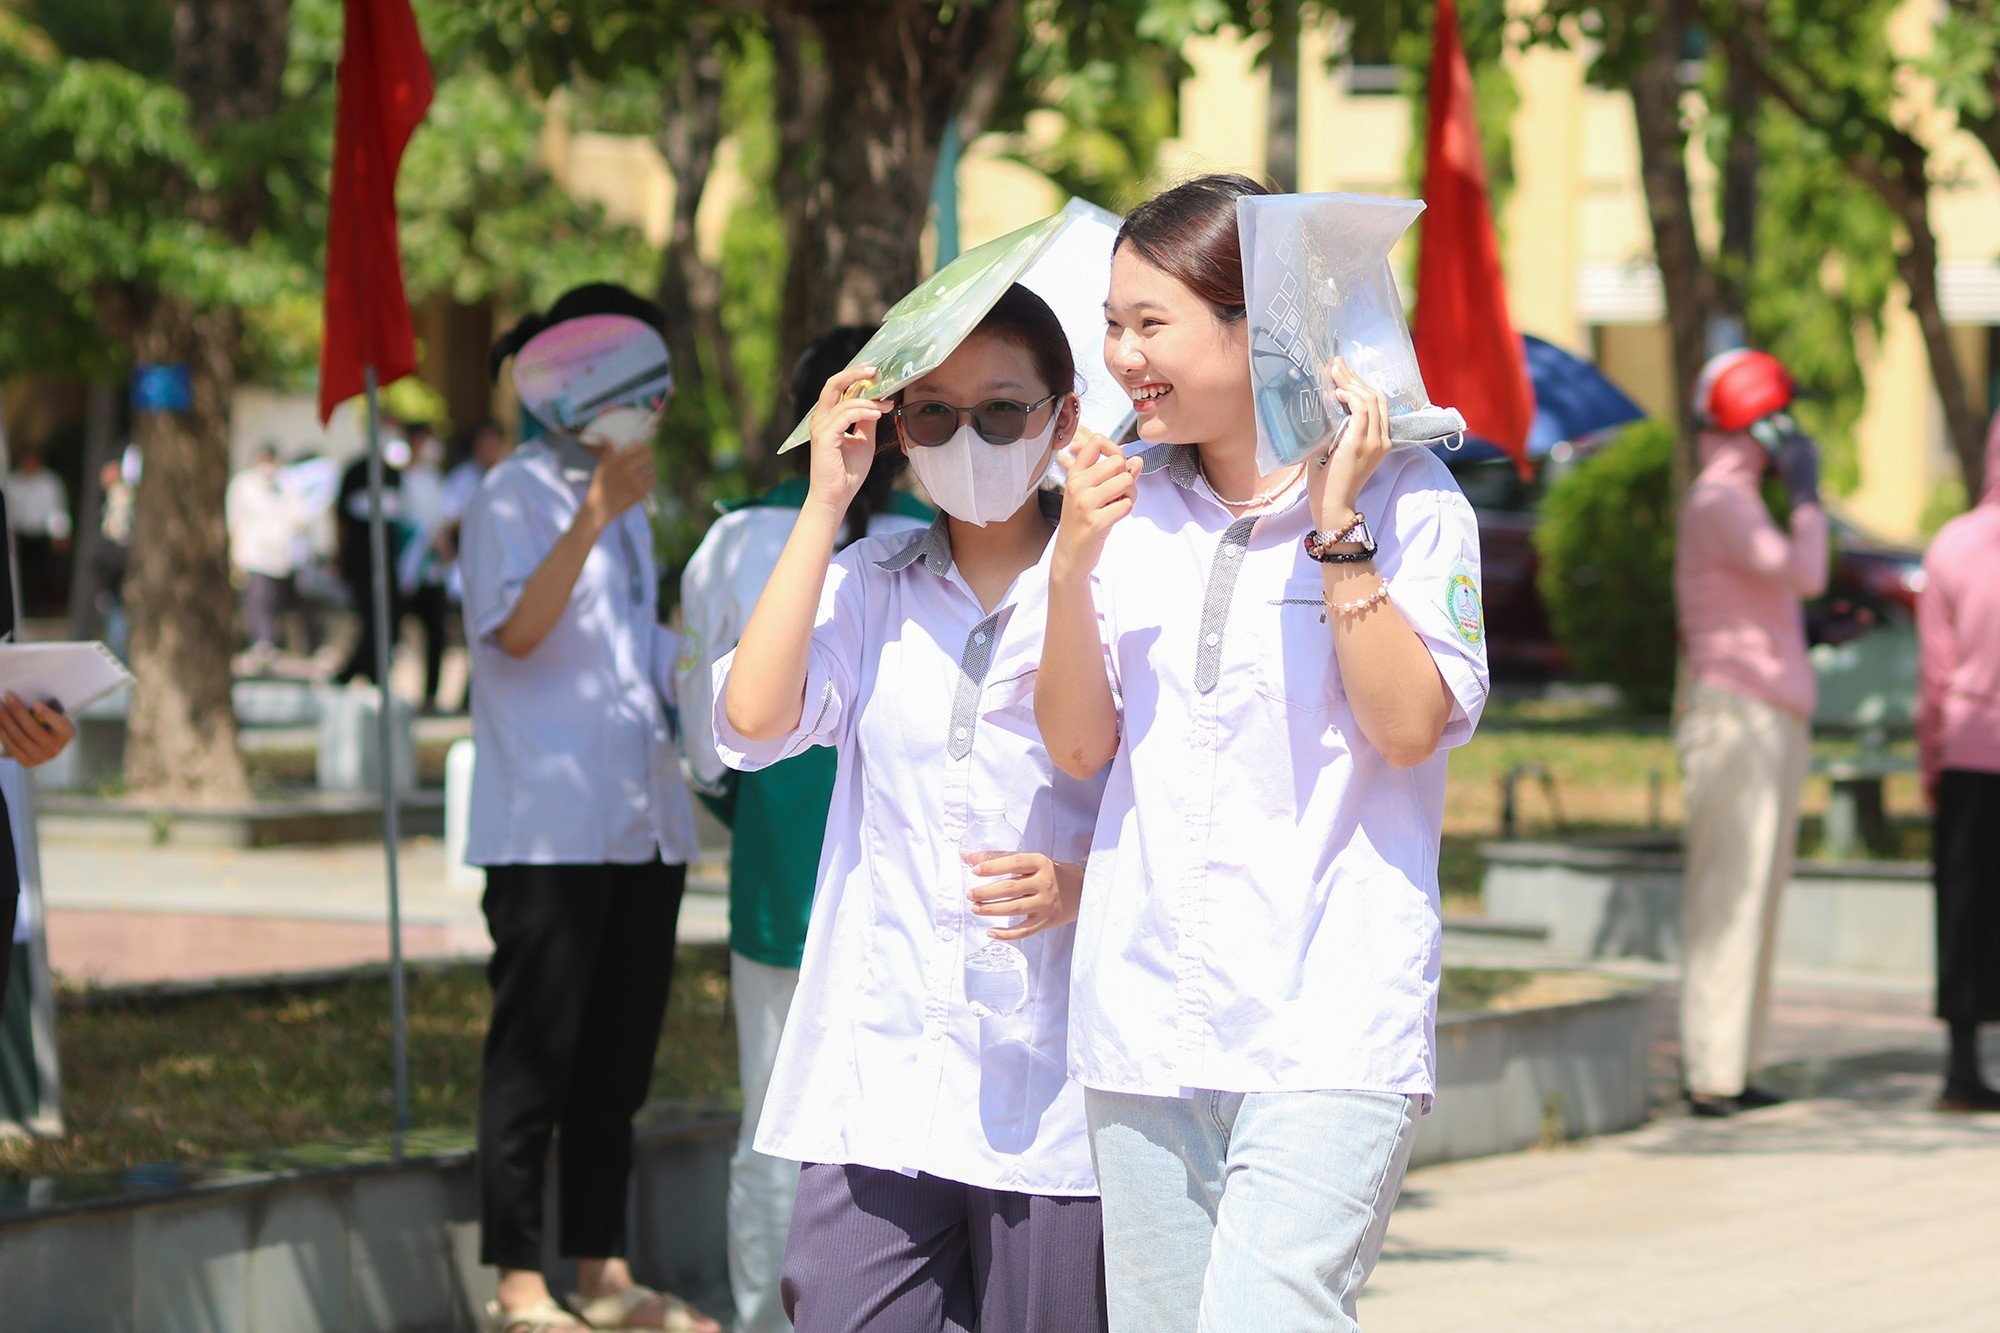 1 thí sinh ở Quảng Bình tử vong trước kỳ thi tốt nghiệp THPT - Ảnh 1.